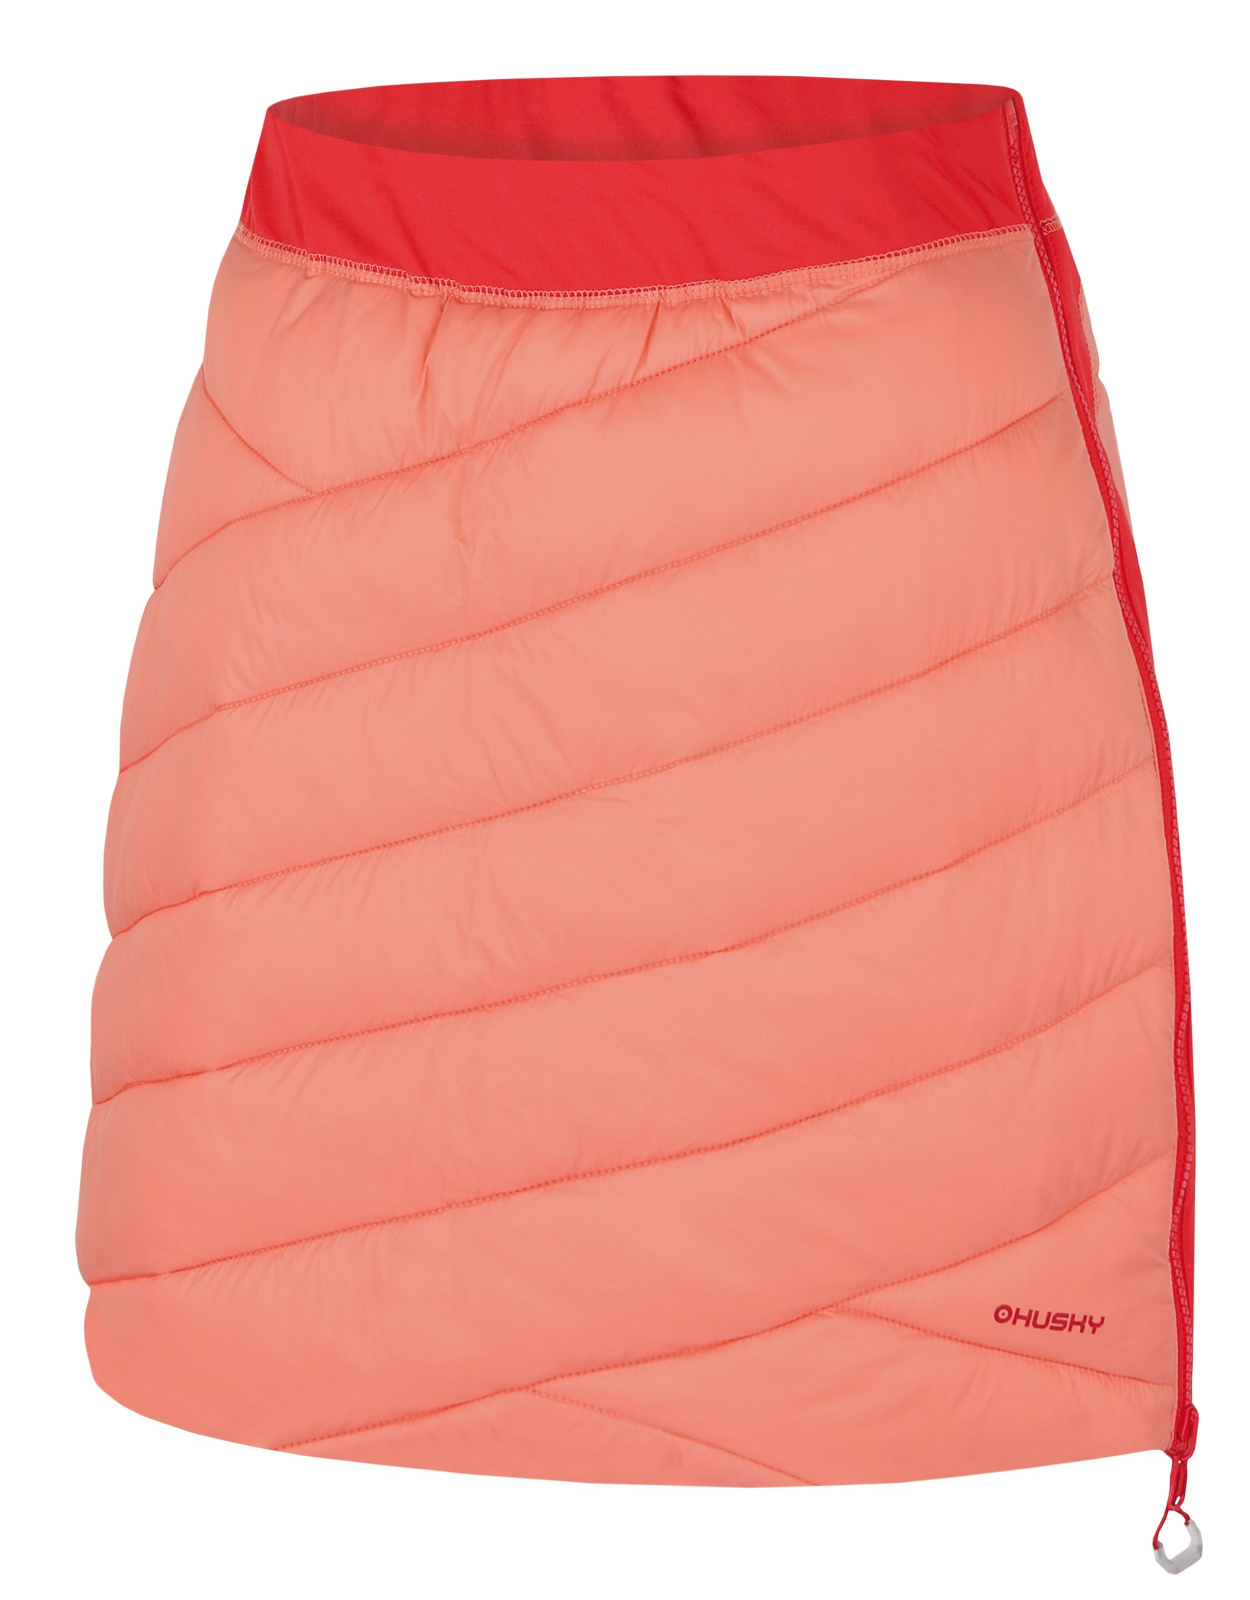 Husky Dámská oboustranná zimní sukně Freez L light orange/red Velikost: S dámská sukně